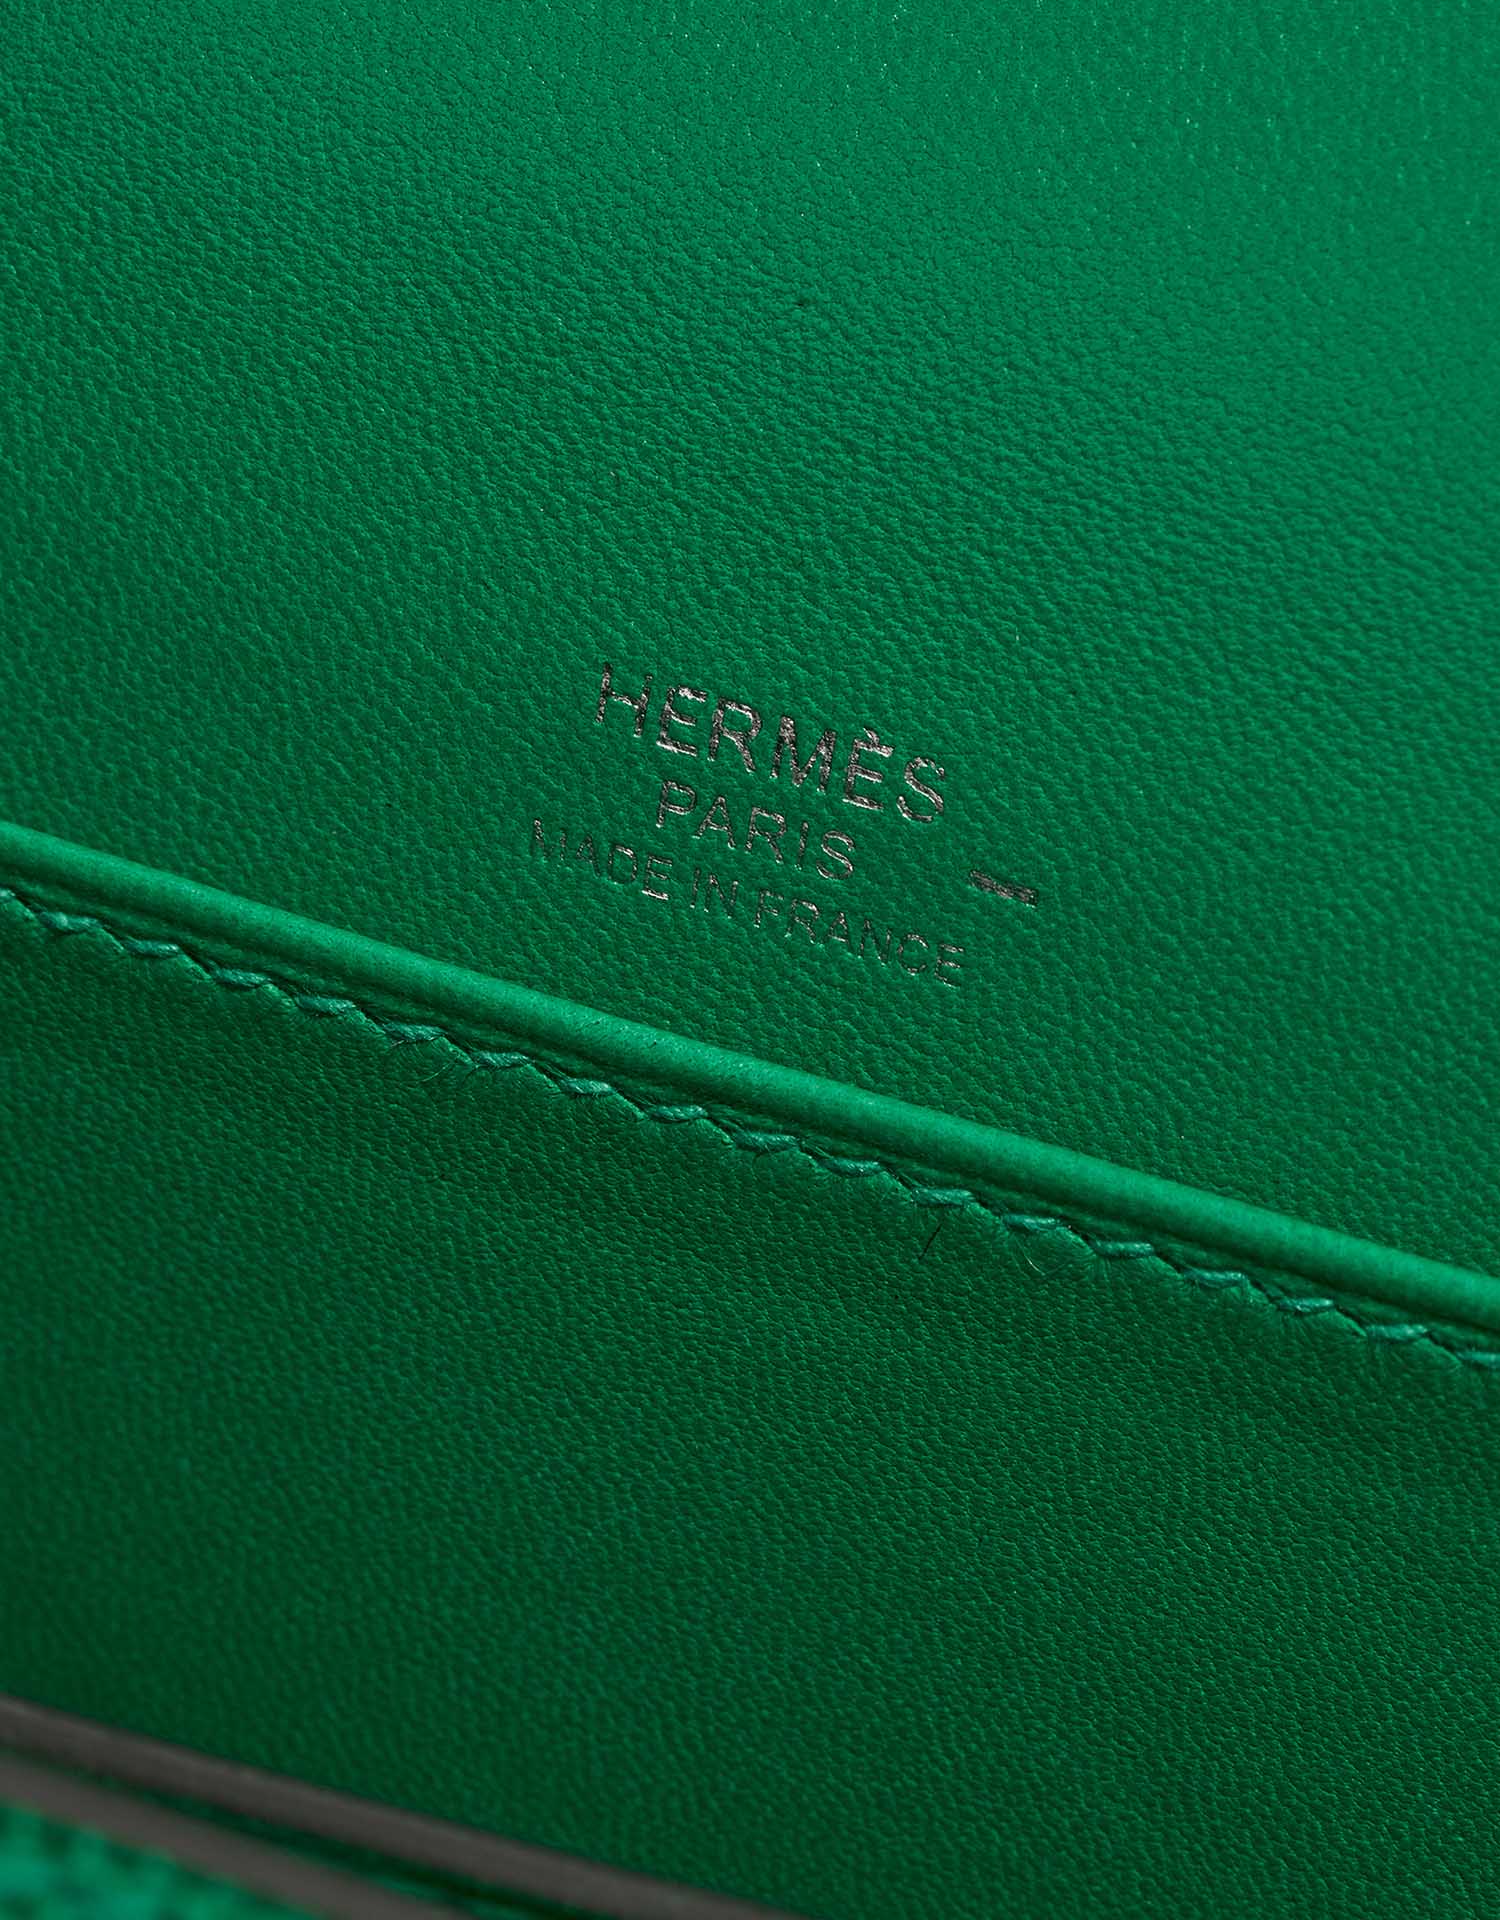 Sac Hermès d'occasion Roulis 18 lézard Vert Menthe Logo Vert | Vendez votre sac de créateur sur Saclab.com